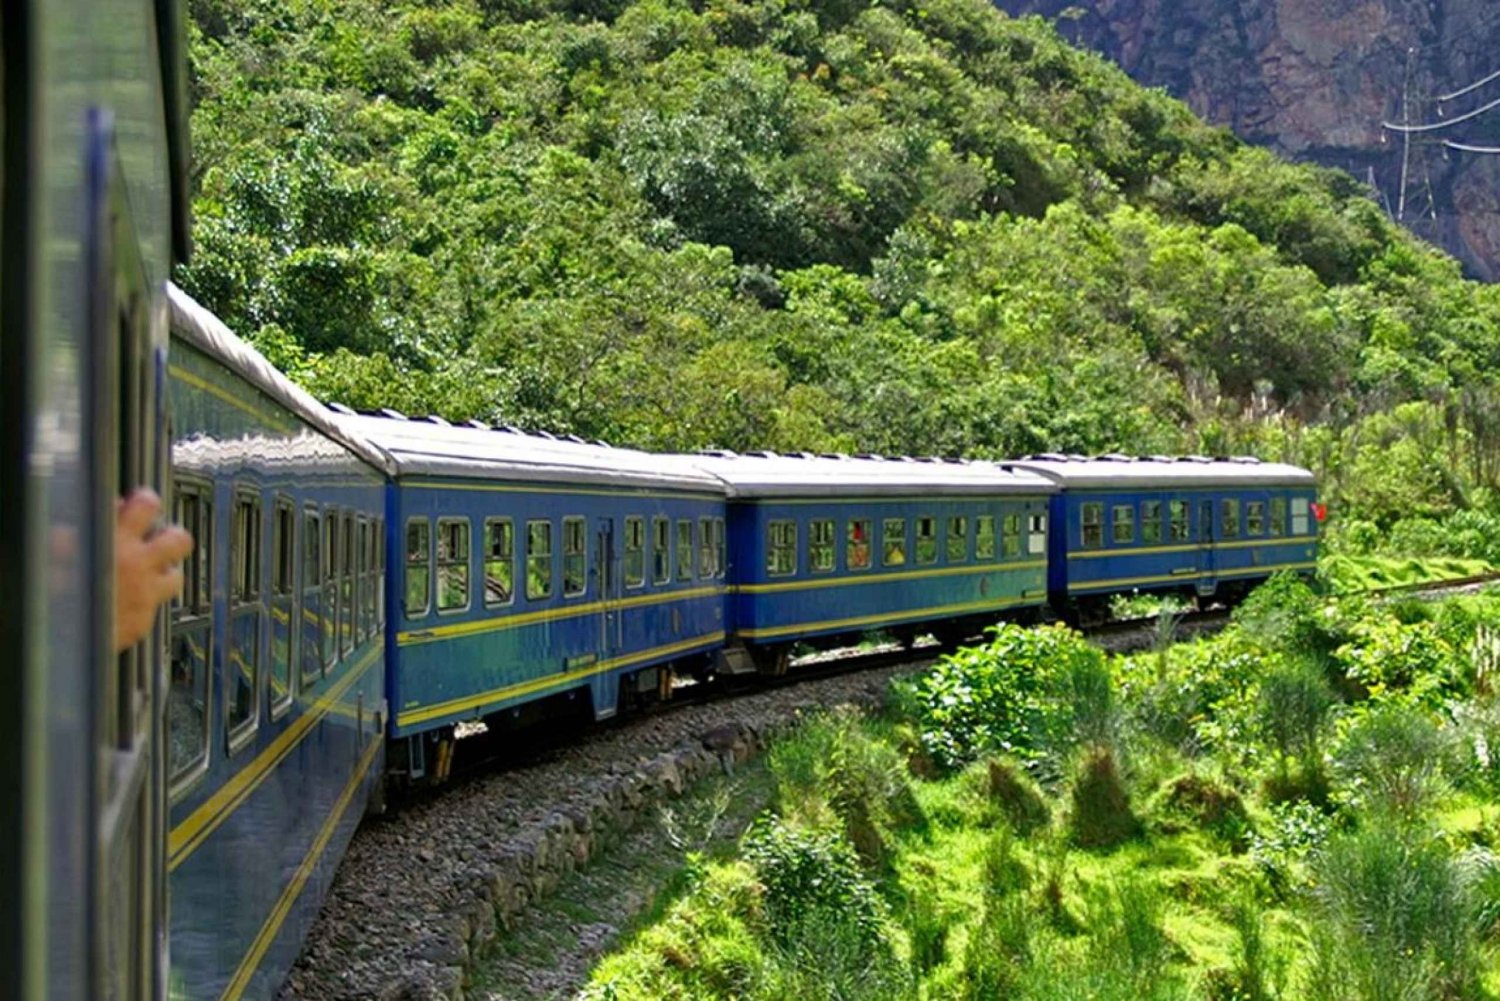 Excursión a la Montaña Arco Iris y a Machu Picchu en tren